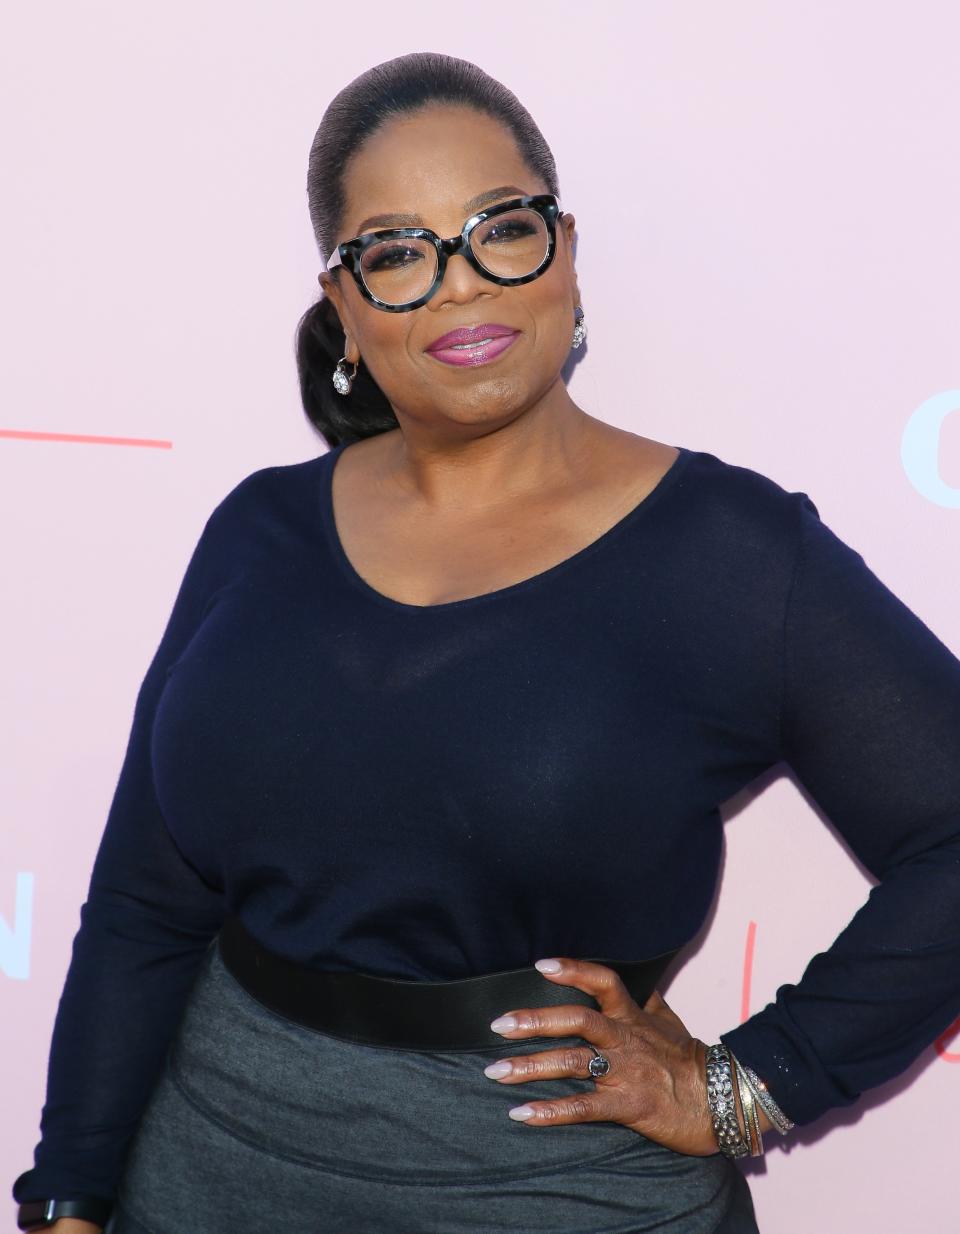 <p>In den USA gibt es keine größere Talkmasterin als Oprah Winfrey. Doch der Weg dahin war steinig, da die heute reiche Winfrey aus einfachem Elternhaus stammt. Mit 19 wurde sie zur ersten afroamerikanischen TV-Korrespondentin im amerikanischen Fernsehen. (Foto: Getty) </p>